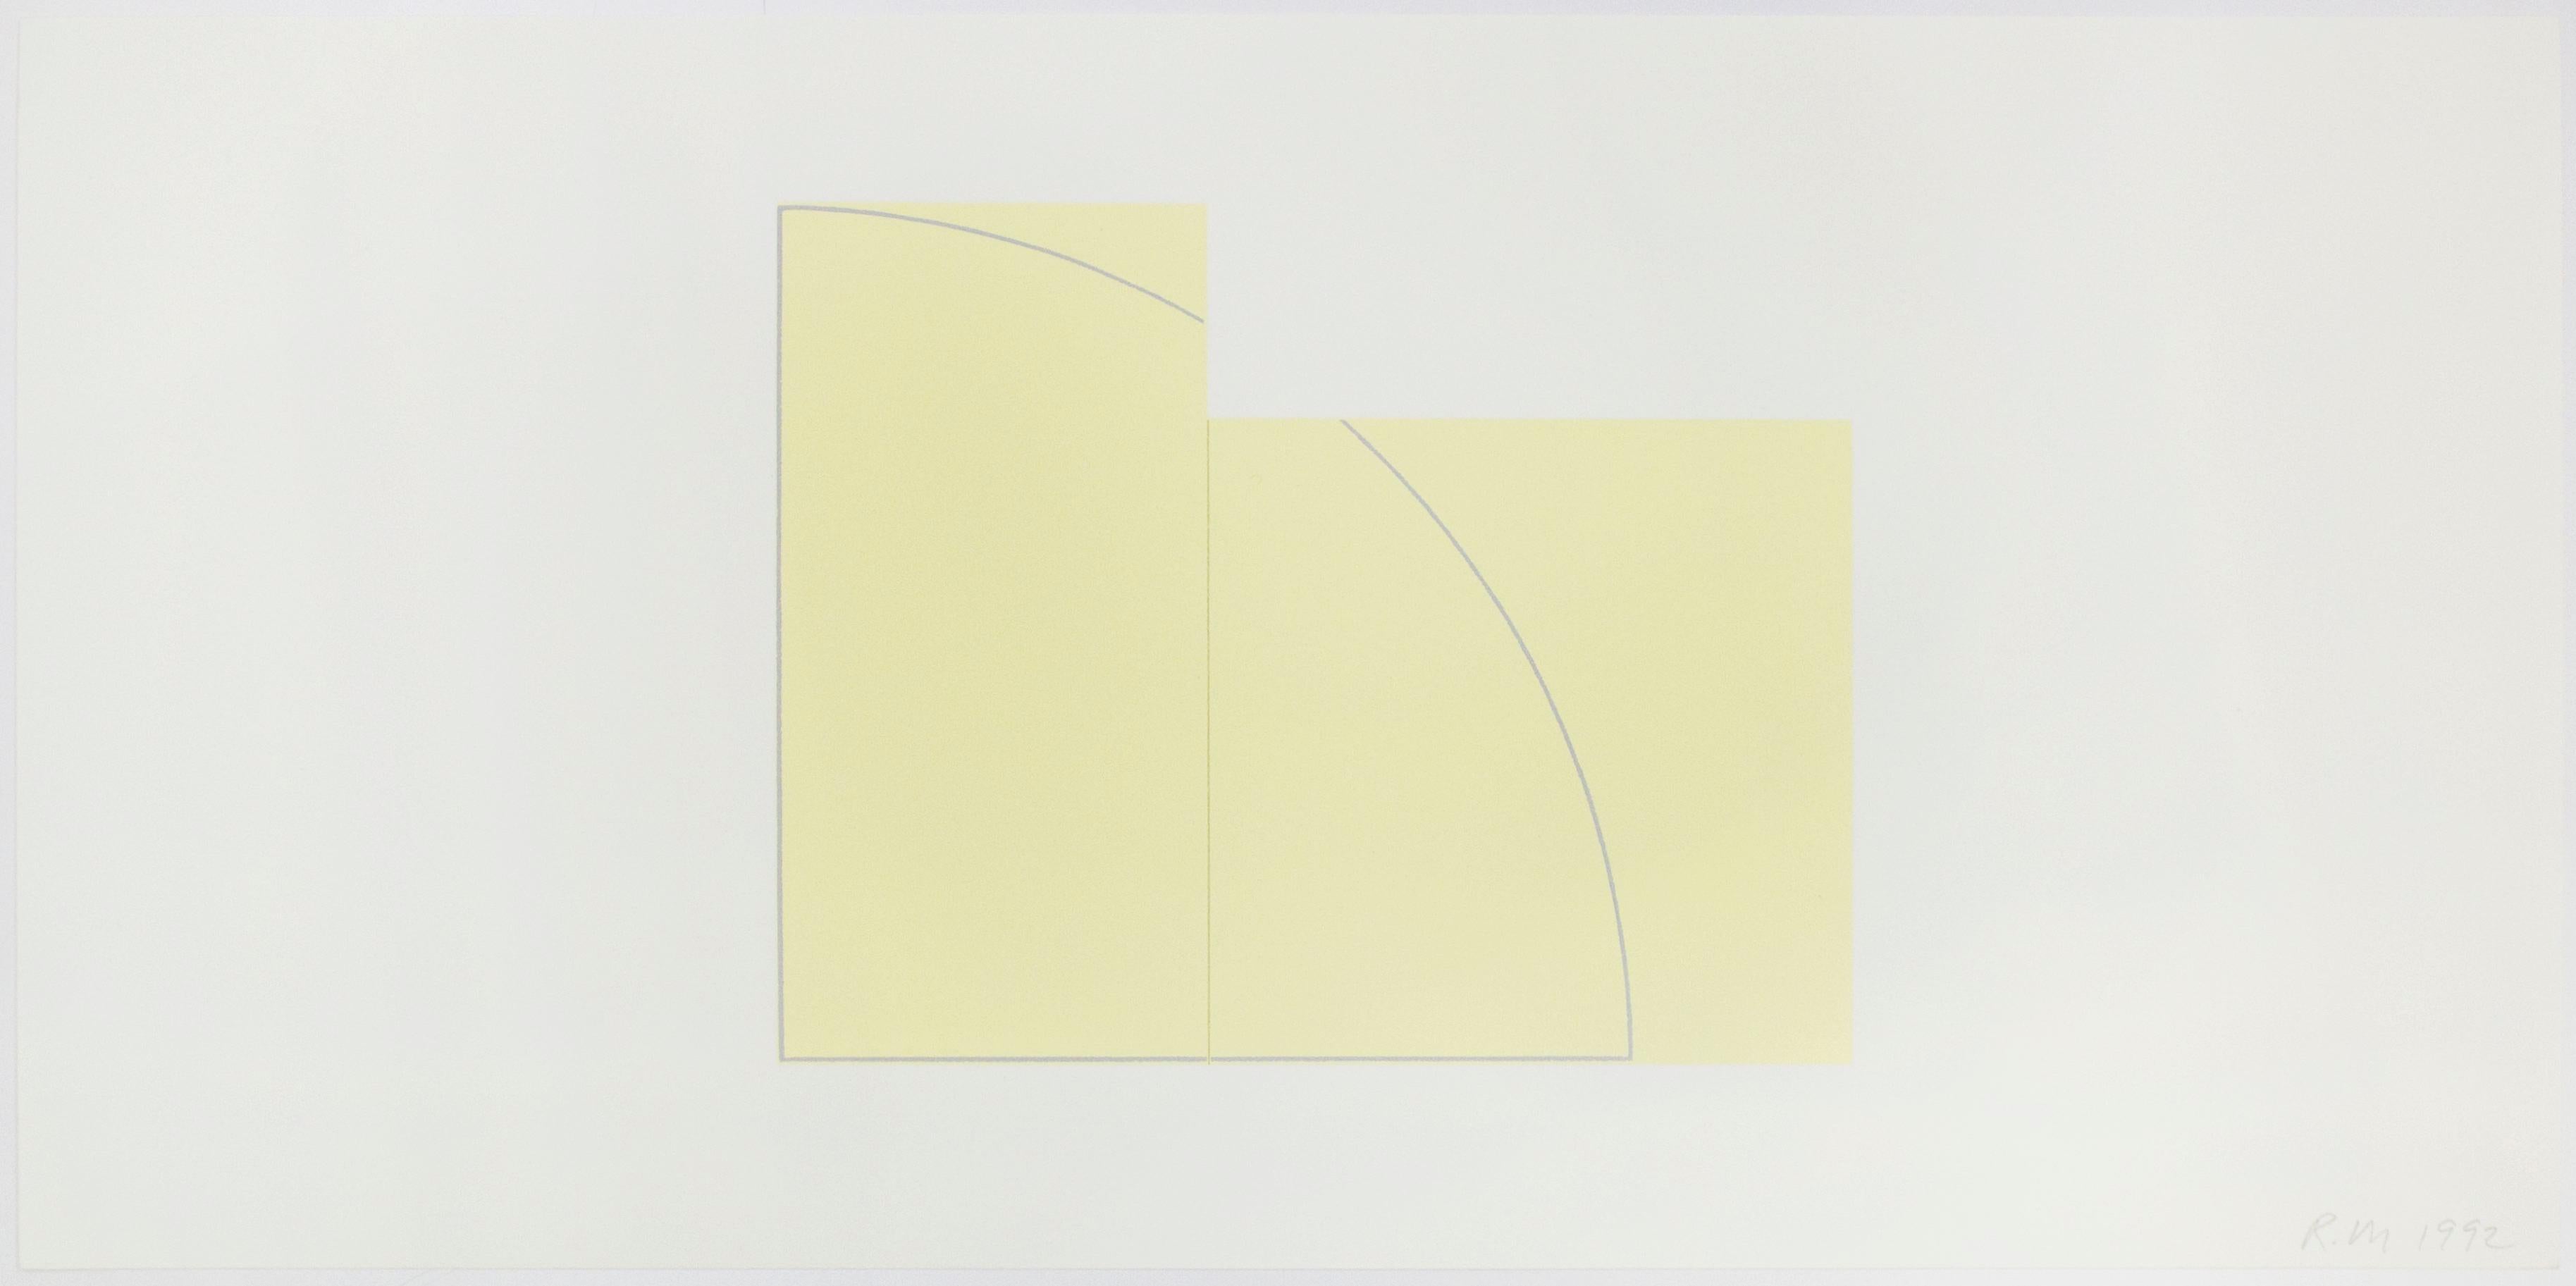 Associé au mouvement artistique minimaliste des années 1960, Mangold a développé un vocabulaire réducteur basé sur des formes géométriques, des couleurs monochromatiques et l'accent mis sur la planéité de l'image peinte. Dans ce répertoire